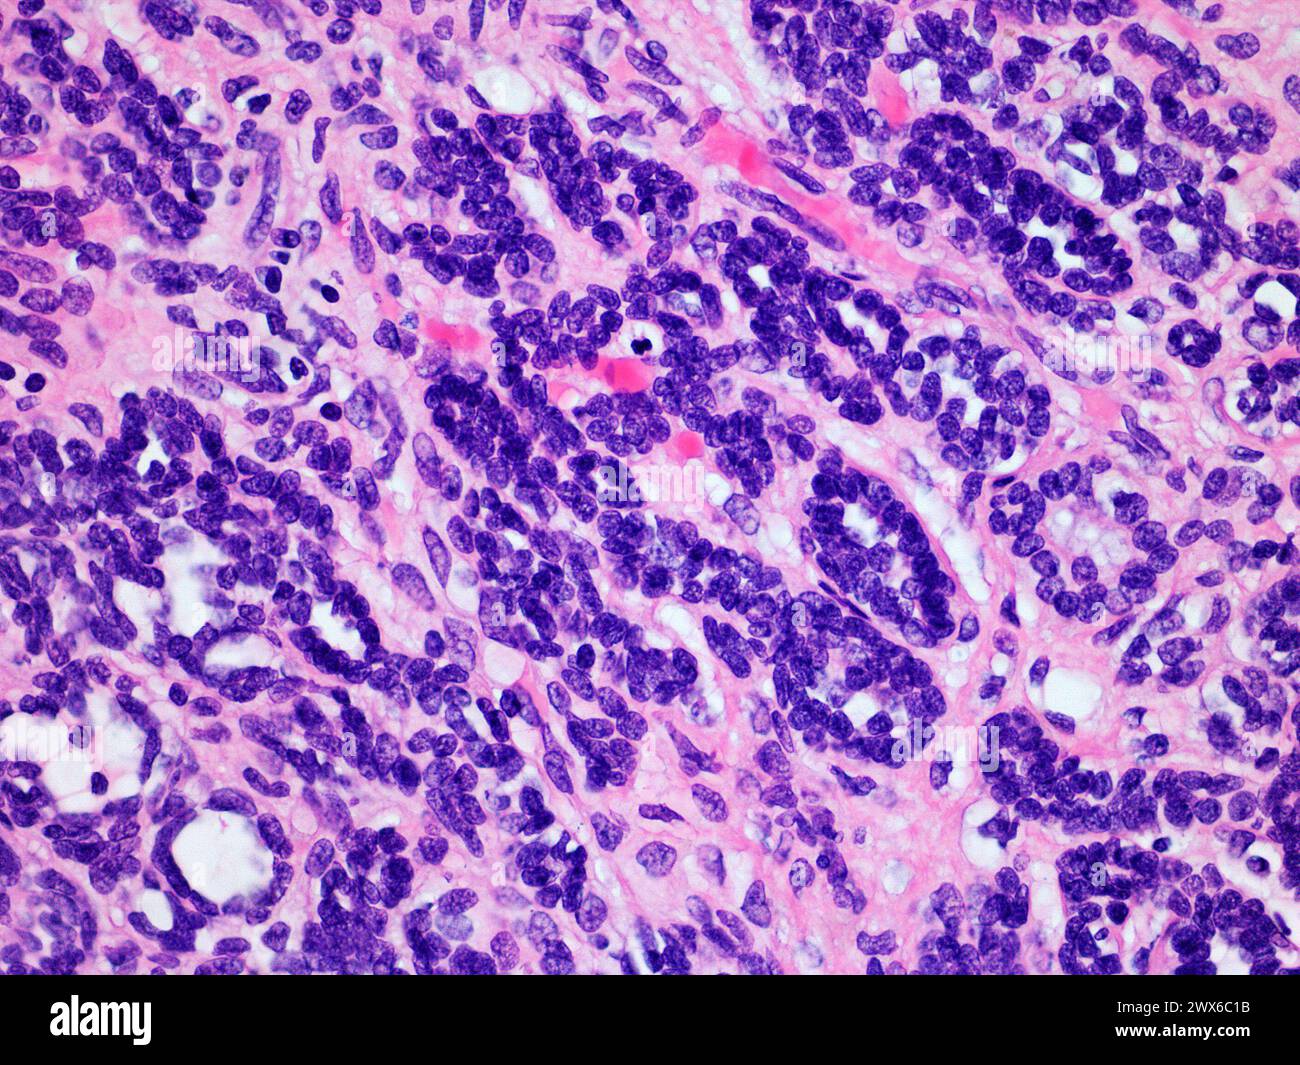 Immagine microscopica di un tumore di Wilms o nefroblastoma di un rene di bambini visualizzato a 400x ingrandimento con ematossilina ed eosina colorante Foto Stock